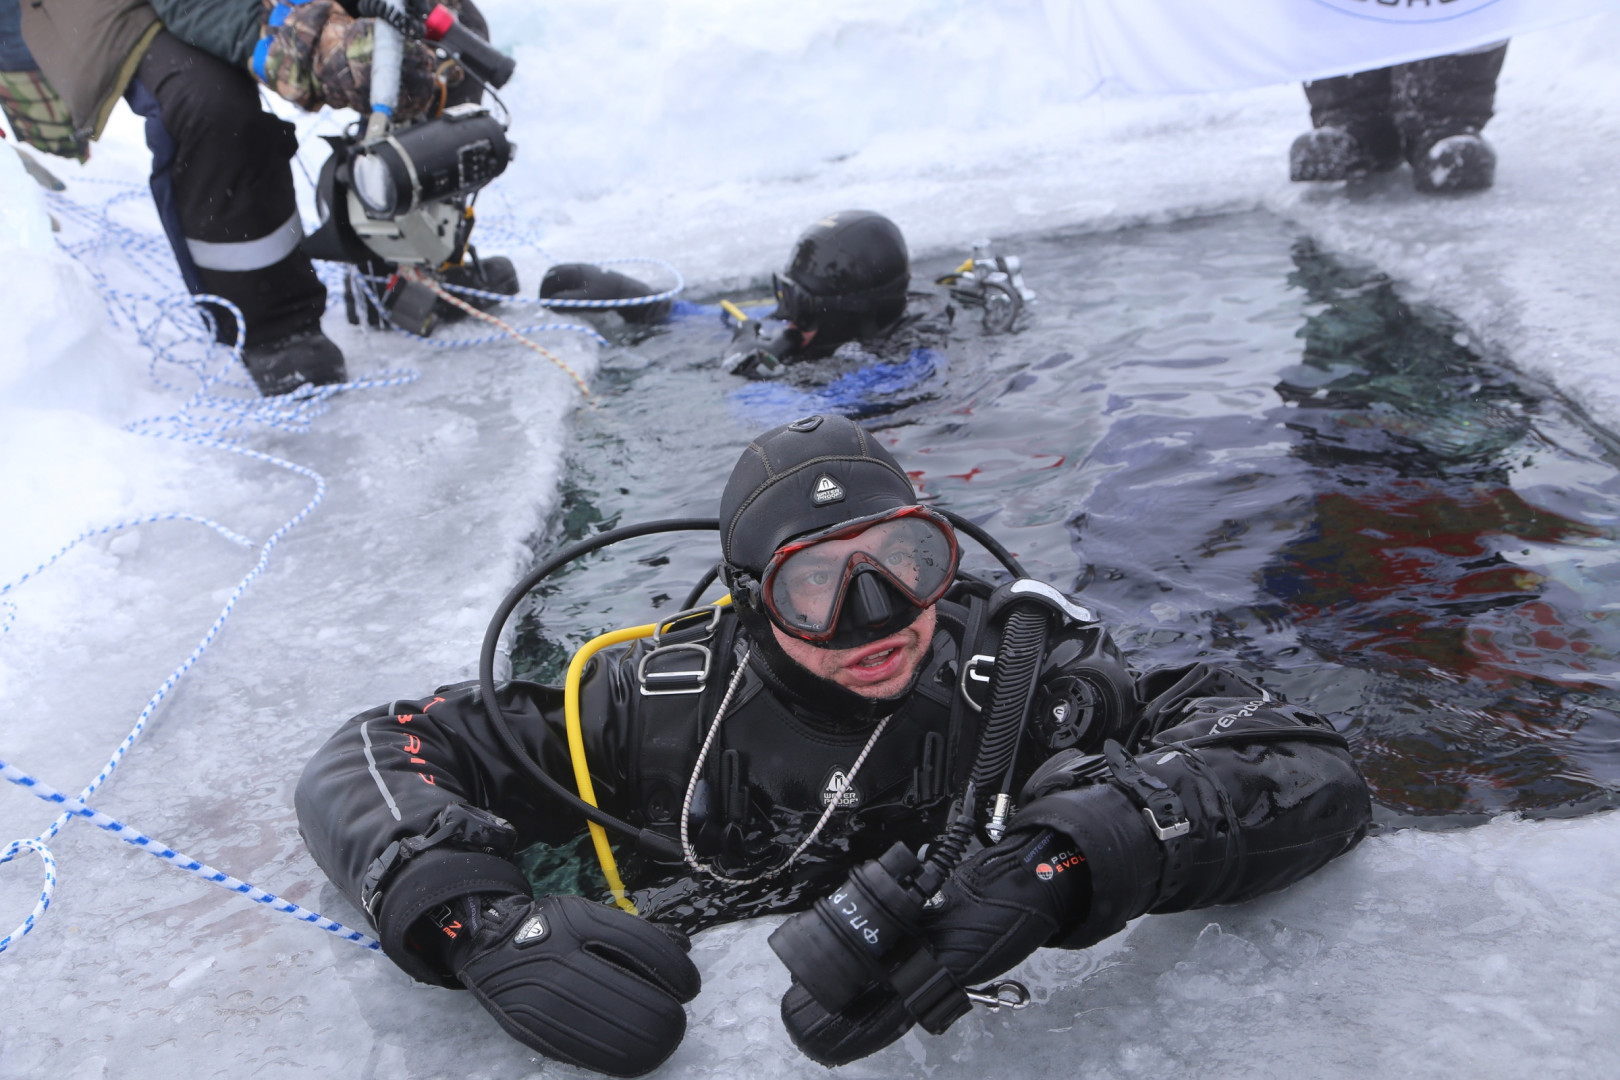 Второе погружение подводного исследовательского отряда Русского географического общества на полюсе холода Северного полушария Земли (8-10 марта 2014 года)